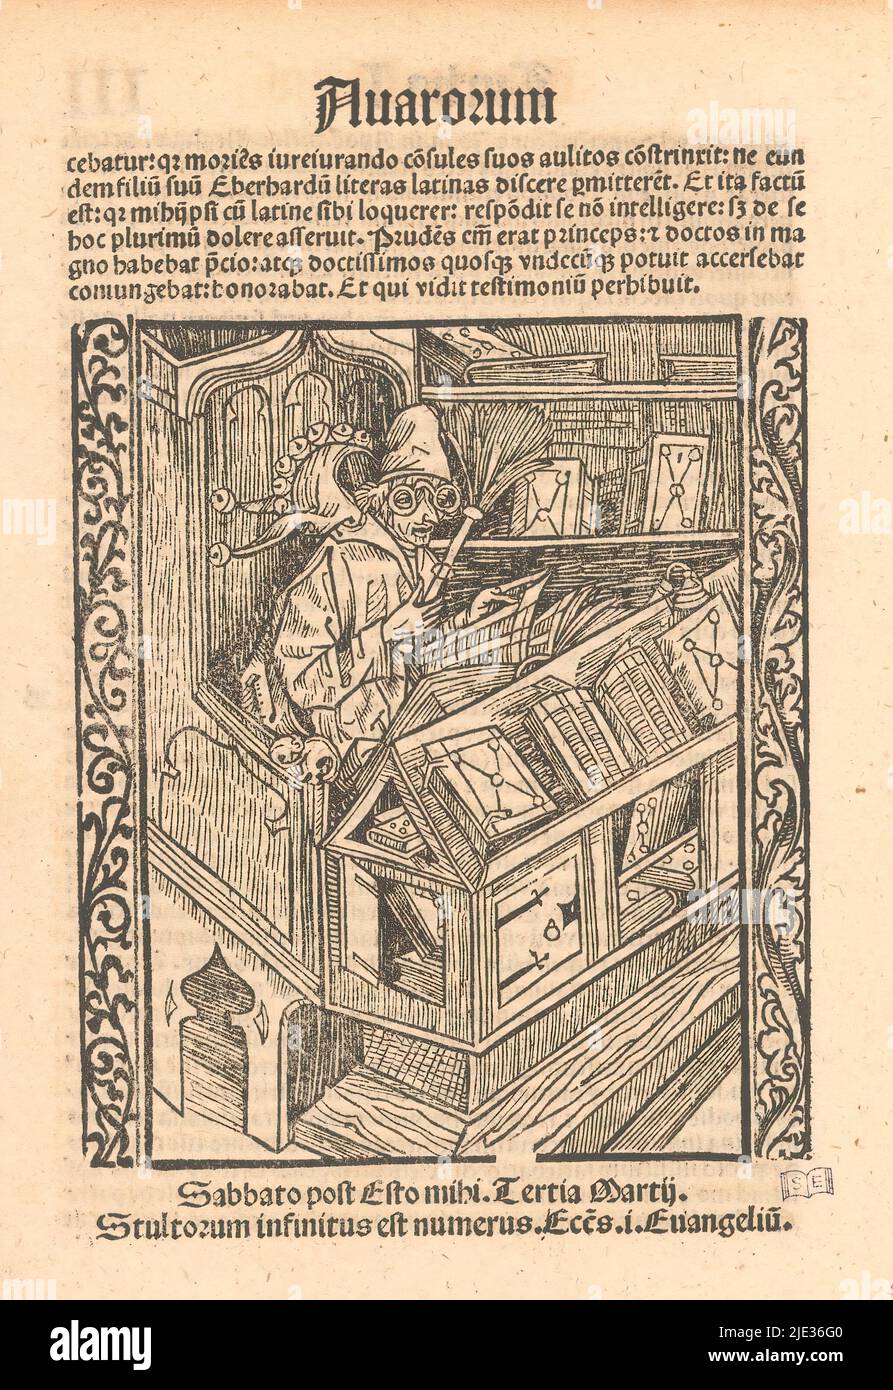 Livre Jester, Un livre jester avec des verres et la casquette de l'imbécile est assis avec un plumeau à la main derrière un pupitre avec des livres sur deux côtés., imprimeur: Meester van de Haintz Nar, (attribué à), imprimeur: Johann Prüss (I), (peut-être), Straatsburg (Frankrijk), 1494 et/ou 1511, papier, impression typographique, hauteur 213 mm × largeur 153 mm Banque D'Images